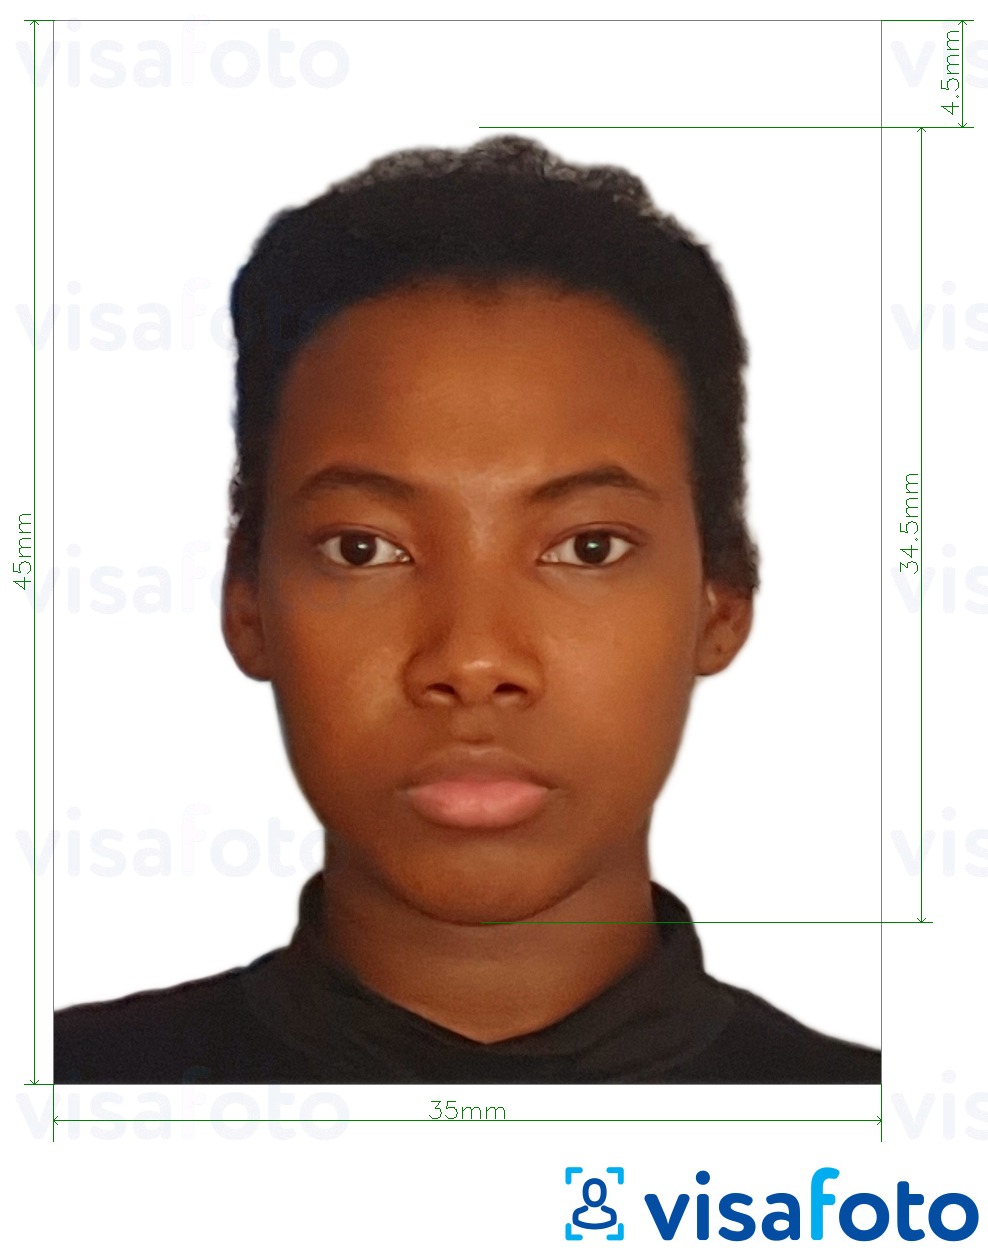  Keenia ID-kaart 35x45 mm fotonäidis koos täpse infoga mõõtude kohta.